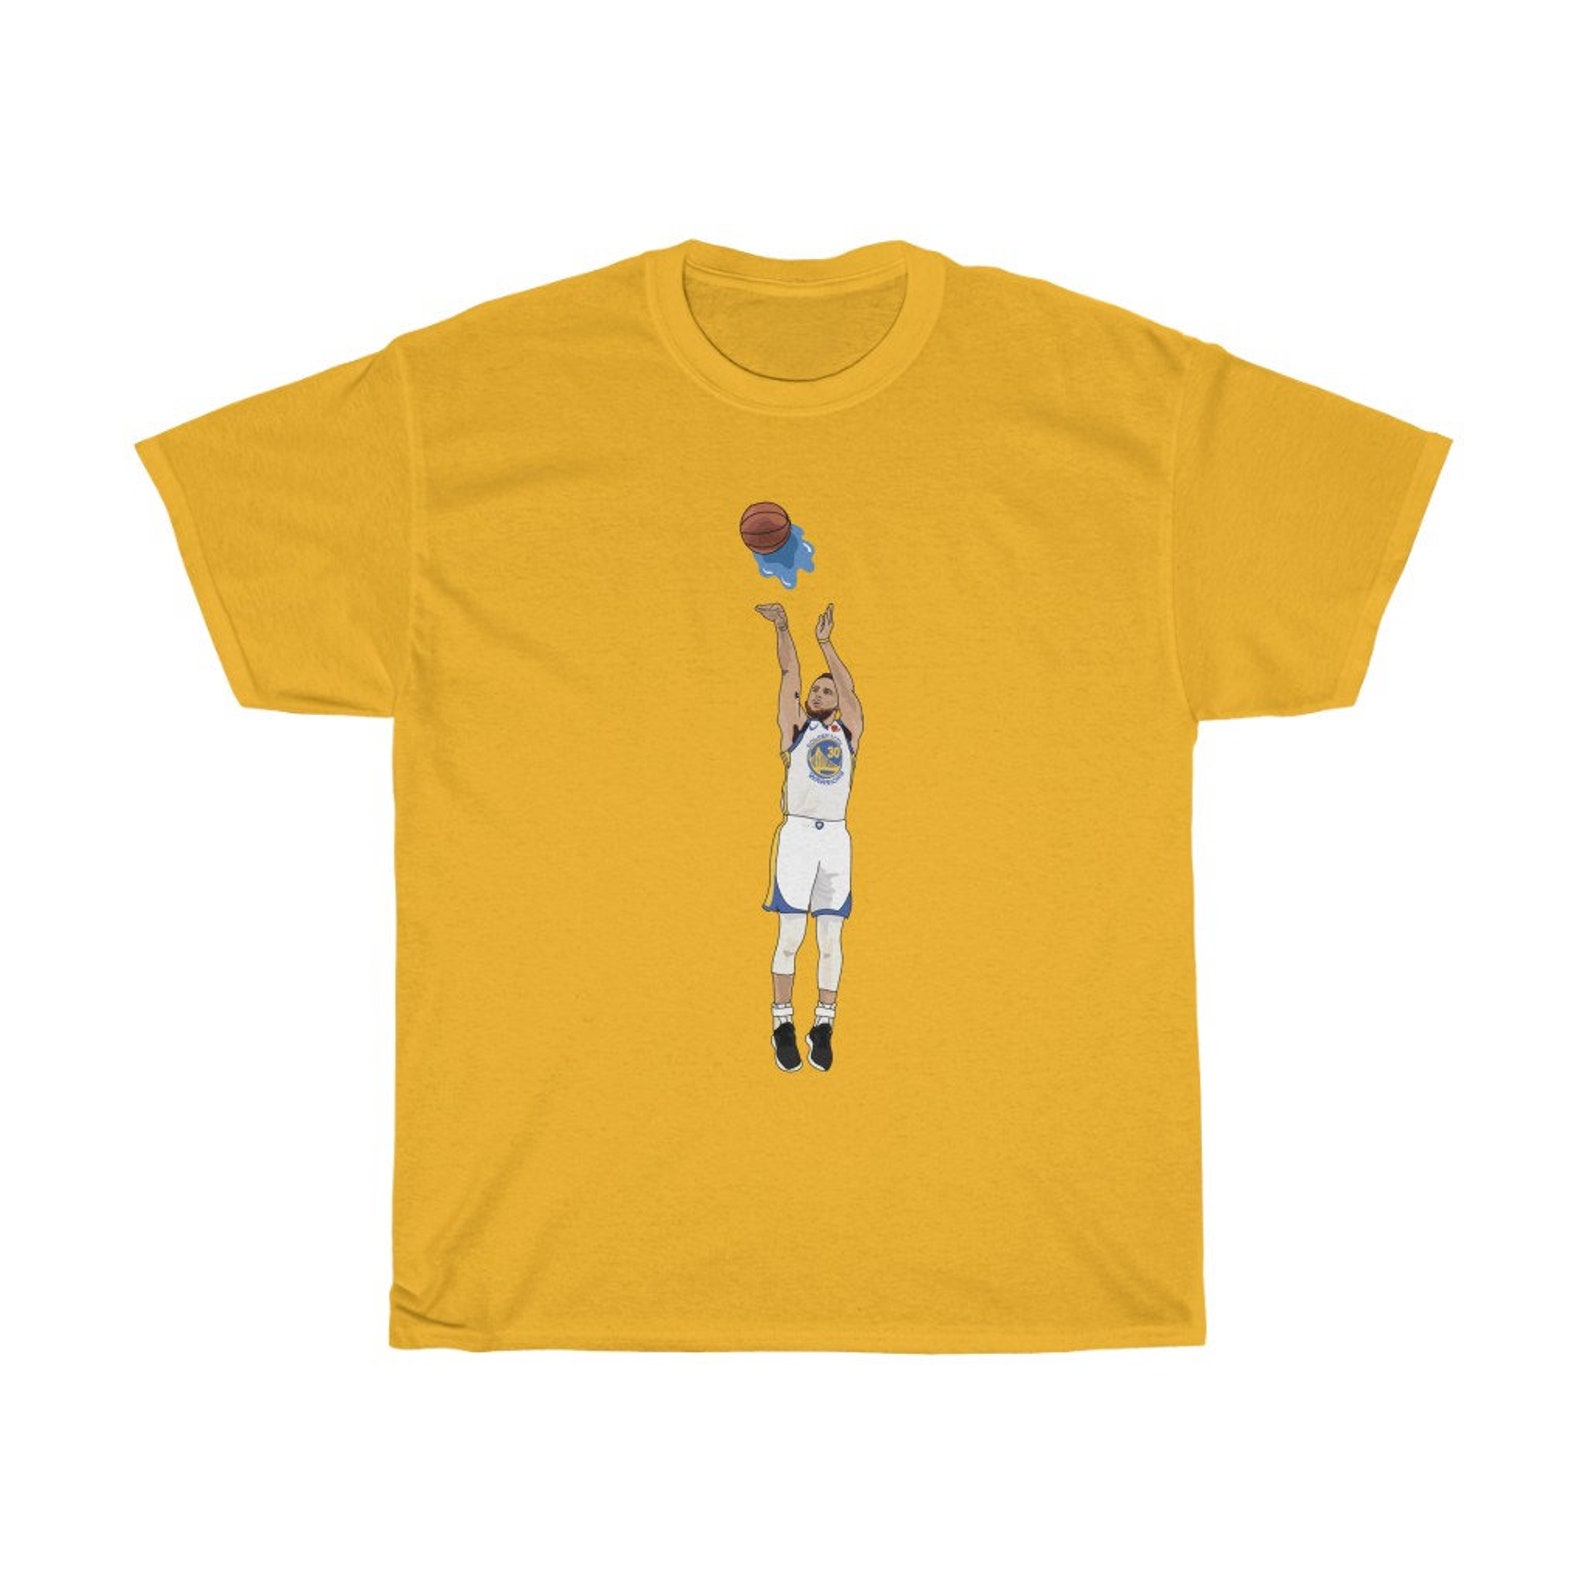 Steph Curry Tshirt | Etsy